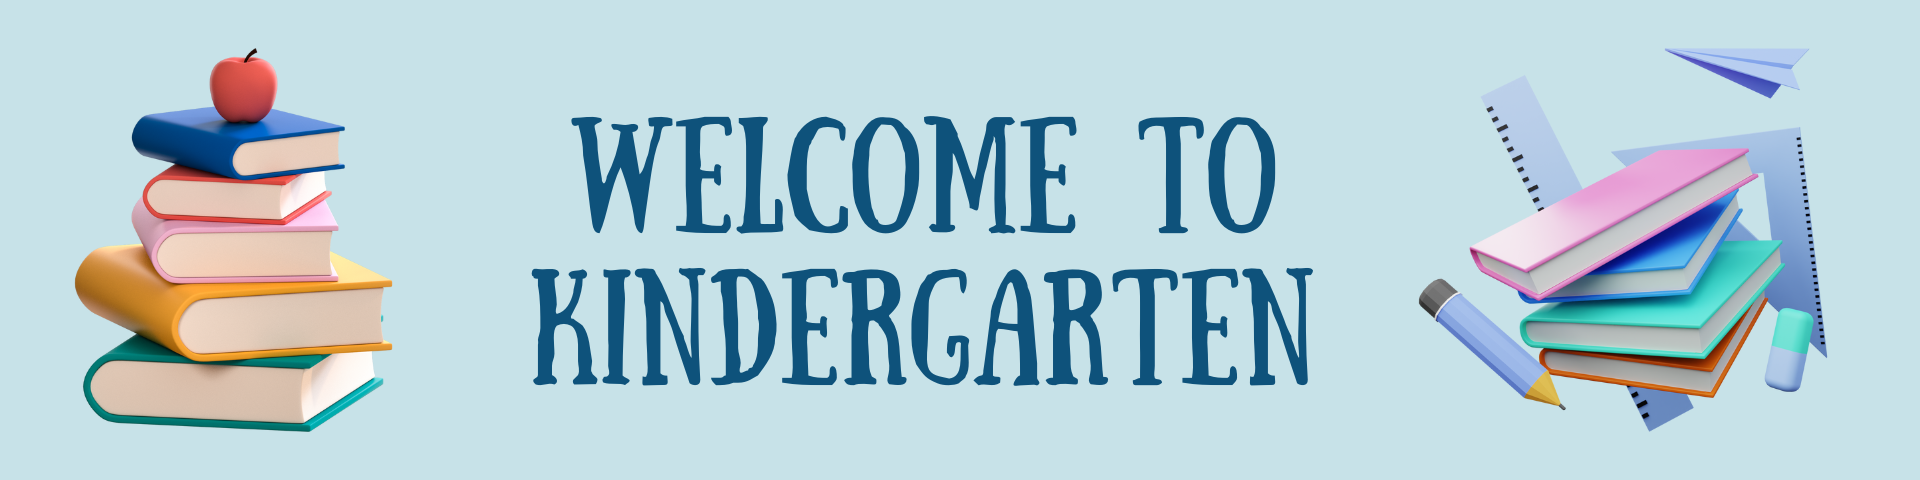 Welcome to Kindergarten Banner